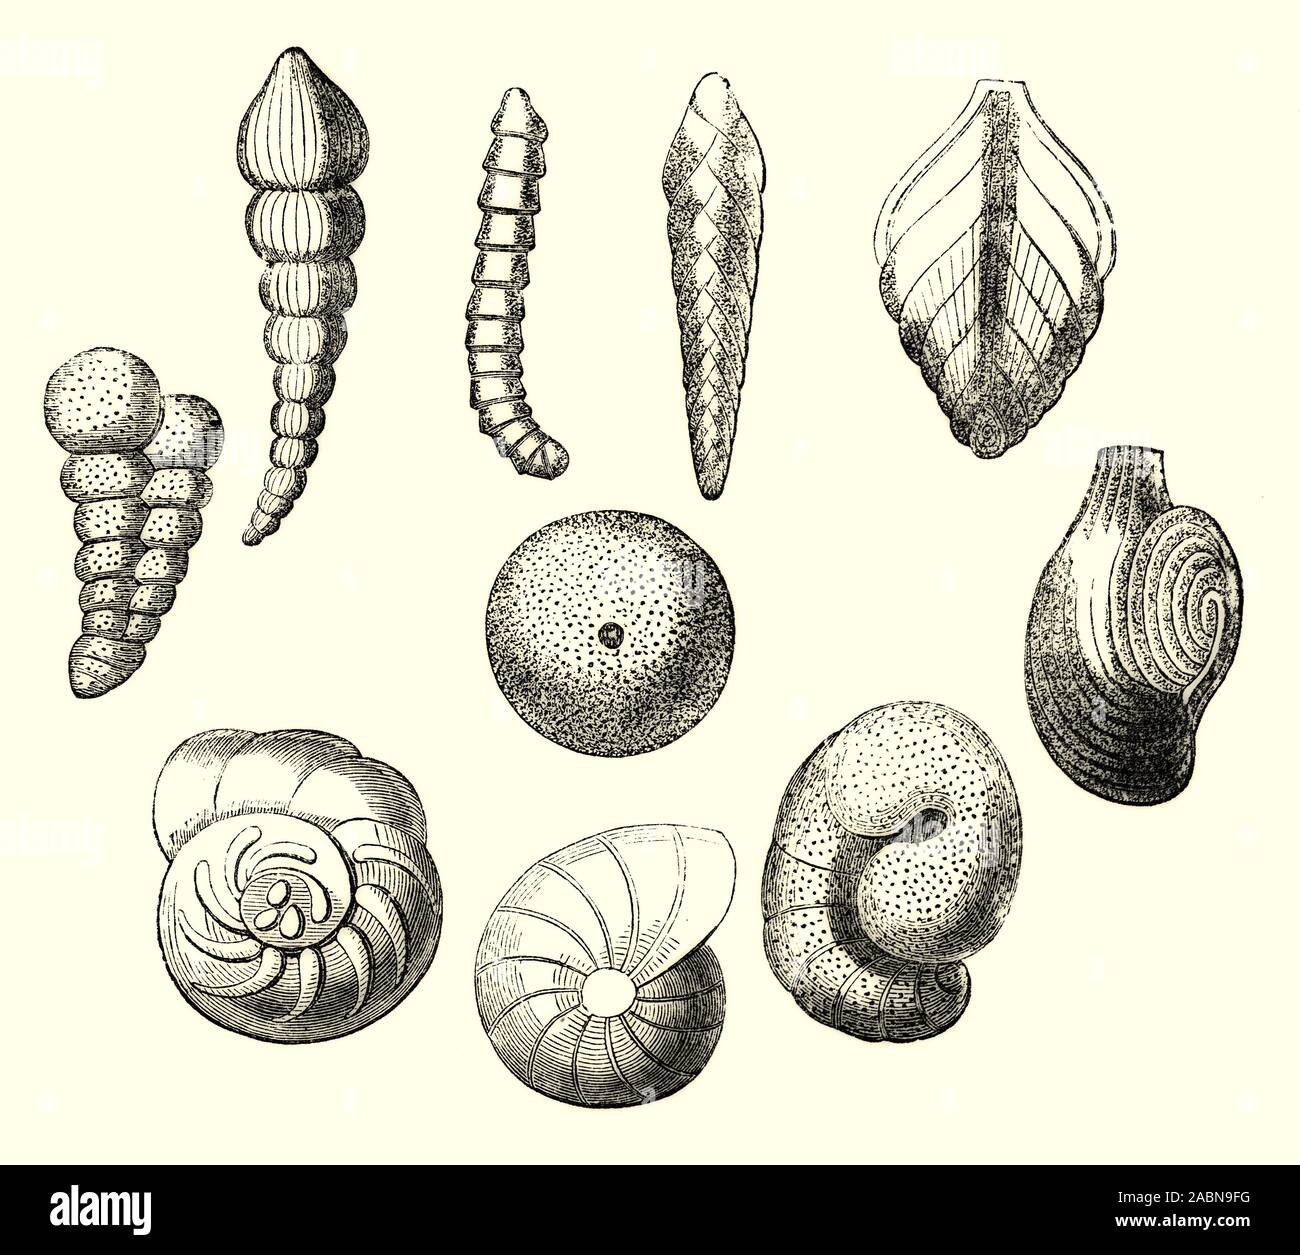 Die Schalen der verschiedenen Muscheln (oder Muscheln). Die Shell ist in der Regel eine kalkhaltige Exoskelett, umschließt, unterstützt und schützt die weichen Teile eines Tieres im Stamm Mollusca, die Schnecken, Muscheln, Tusk Tanks einschließt, und mehrere andere Klassen. Stockfoto